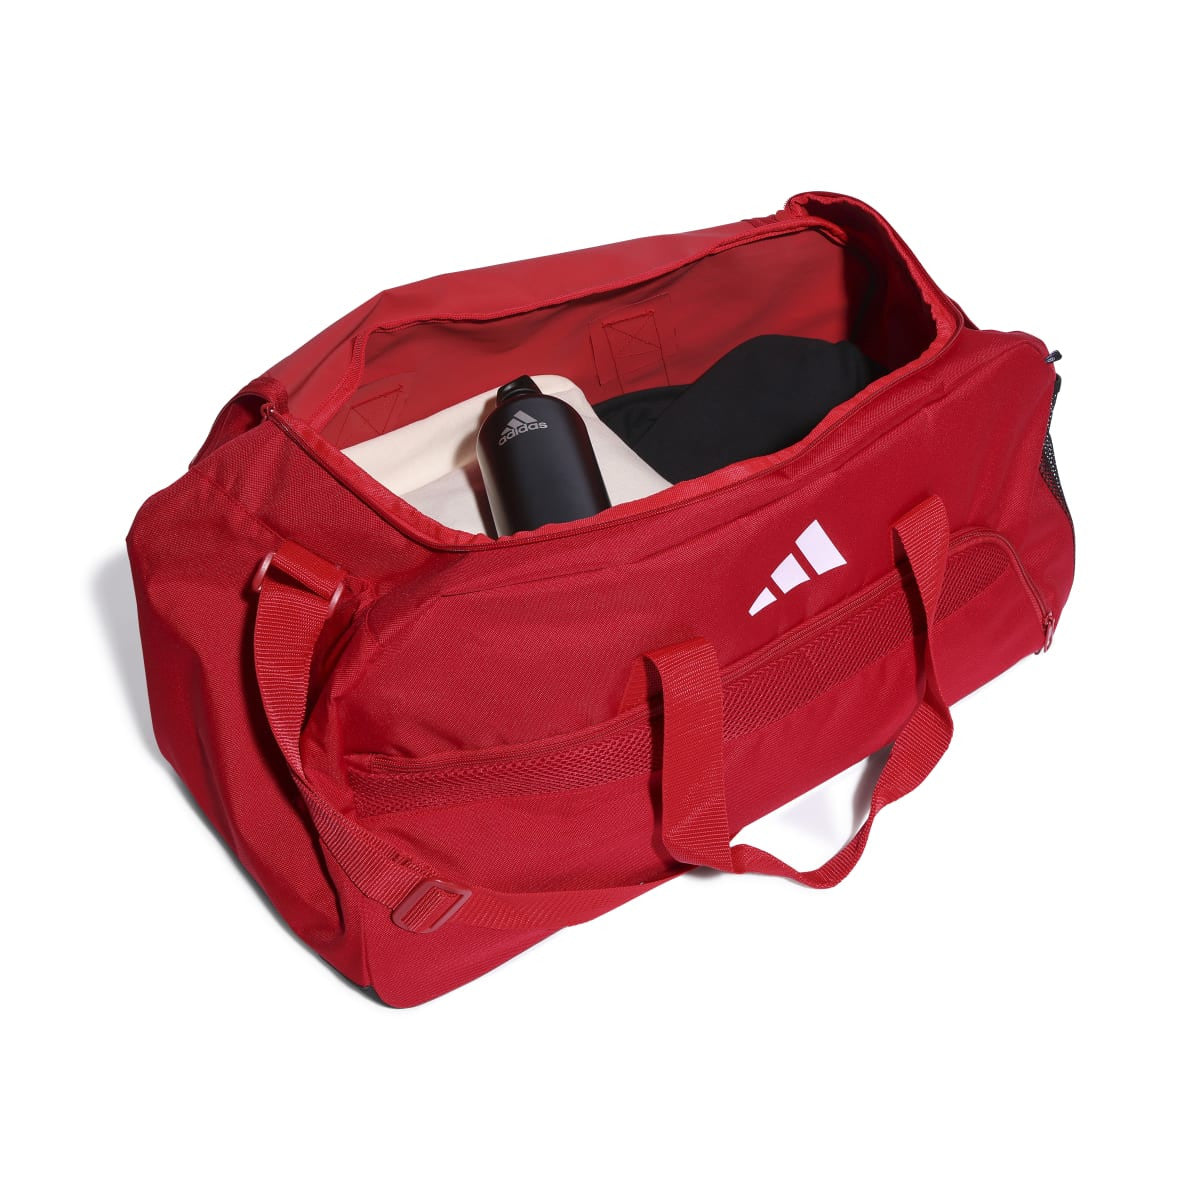 Adidas Tiro League Duffle Bag Medium